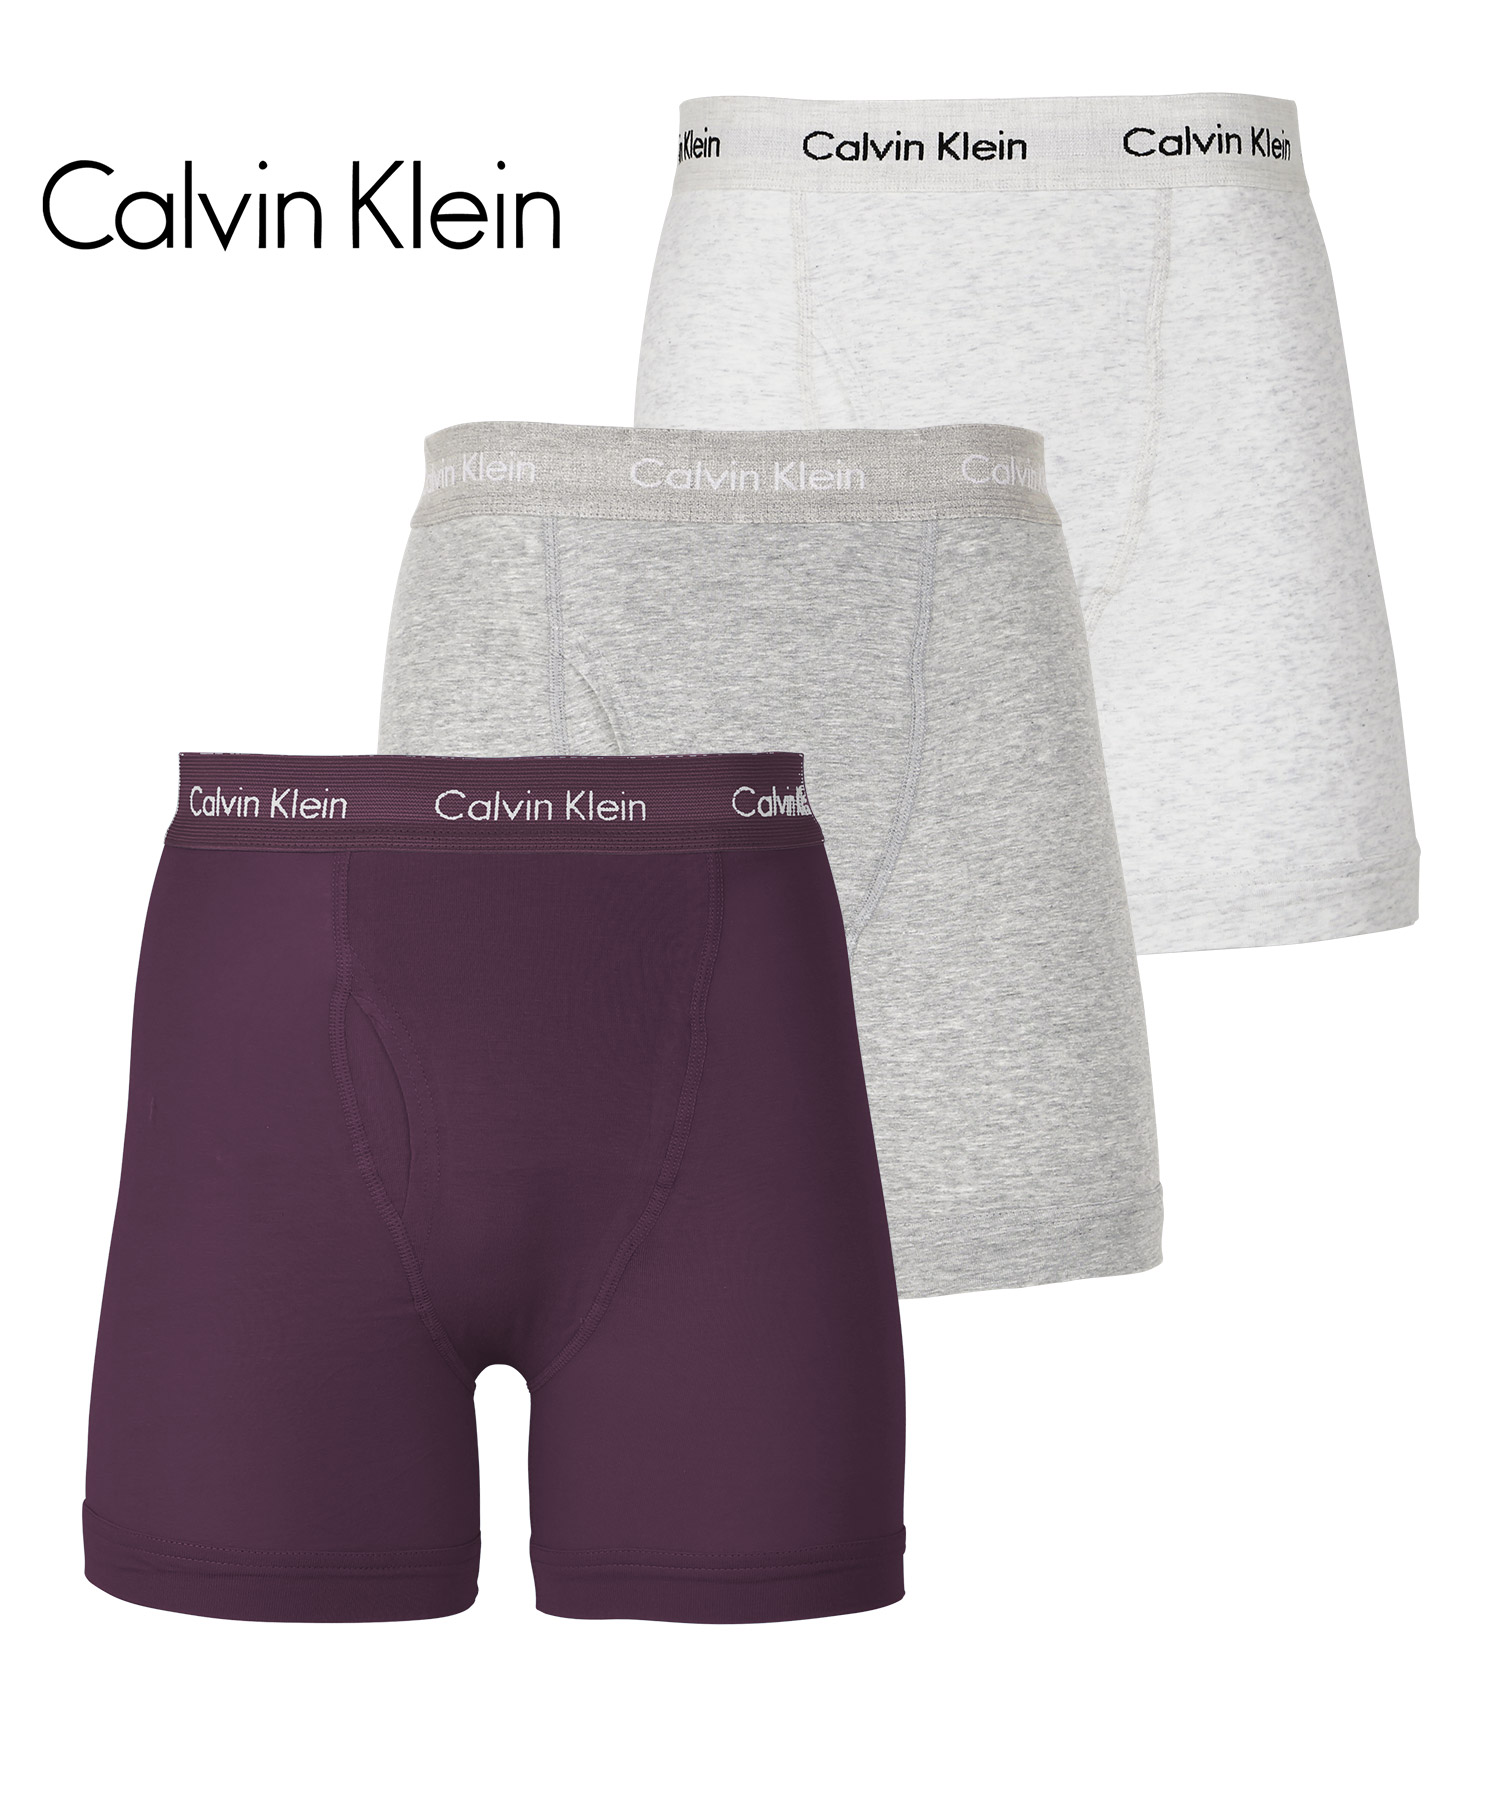 カルバンクライン ボクサーパンツ 3枚セット Calvin Klein ロング メンズ 下着 アンダーウェア 紳士 綿 長め 前開き ブランド 高級  ハイブランド ギフト 父の日